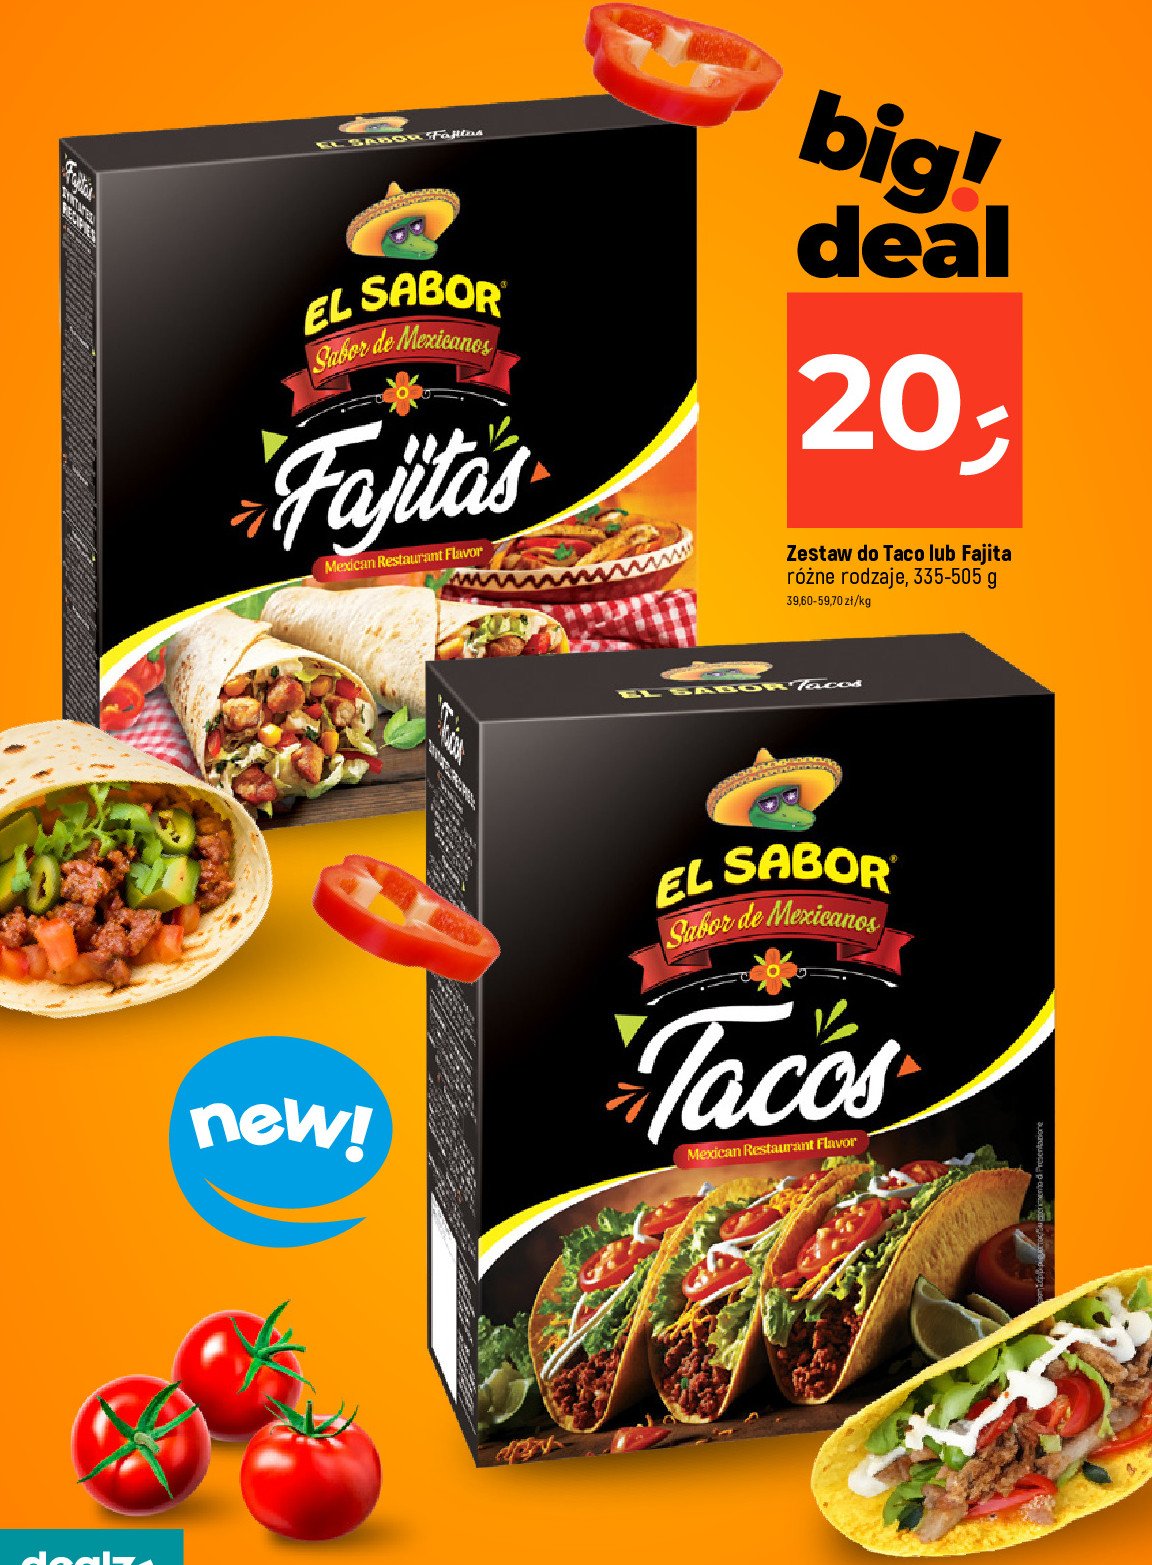 Taco dinner kit El sabor promocja